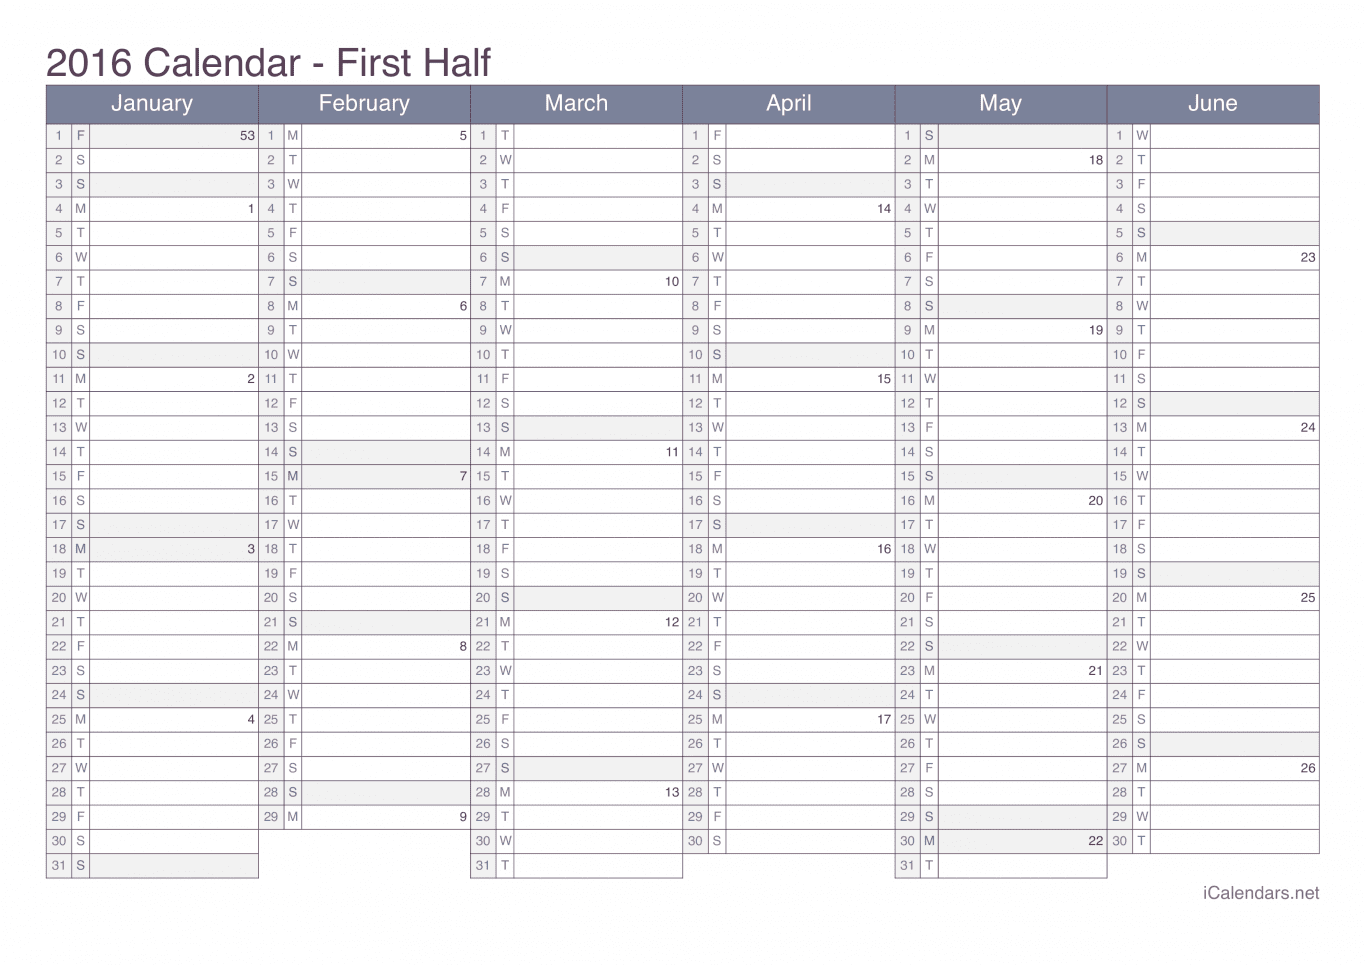 2016 Half year calendar with week numbers - Office